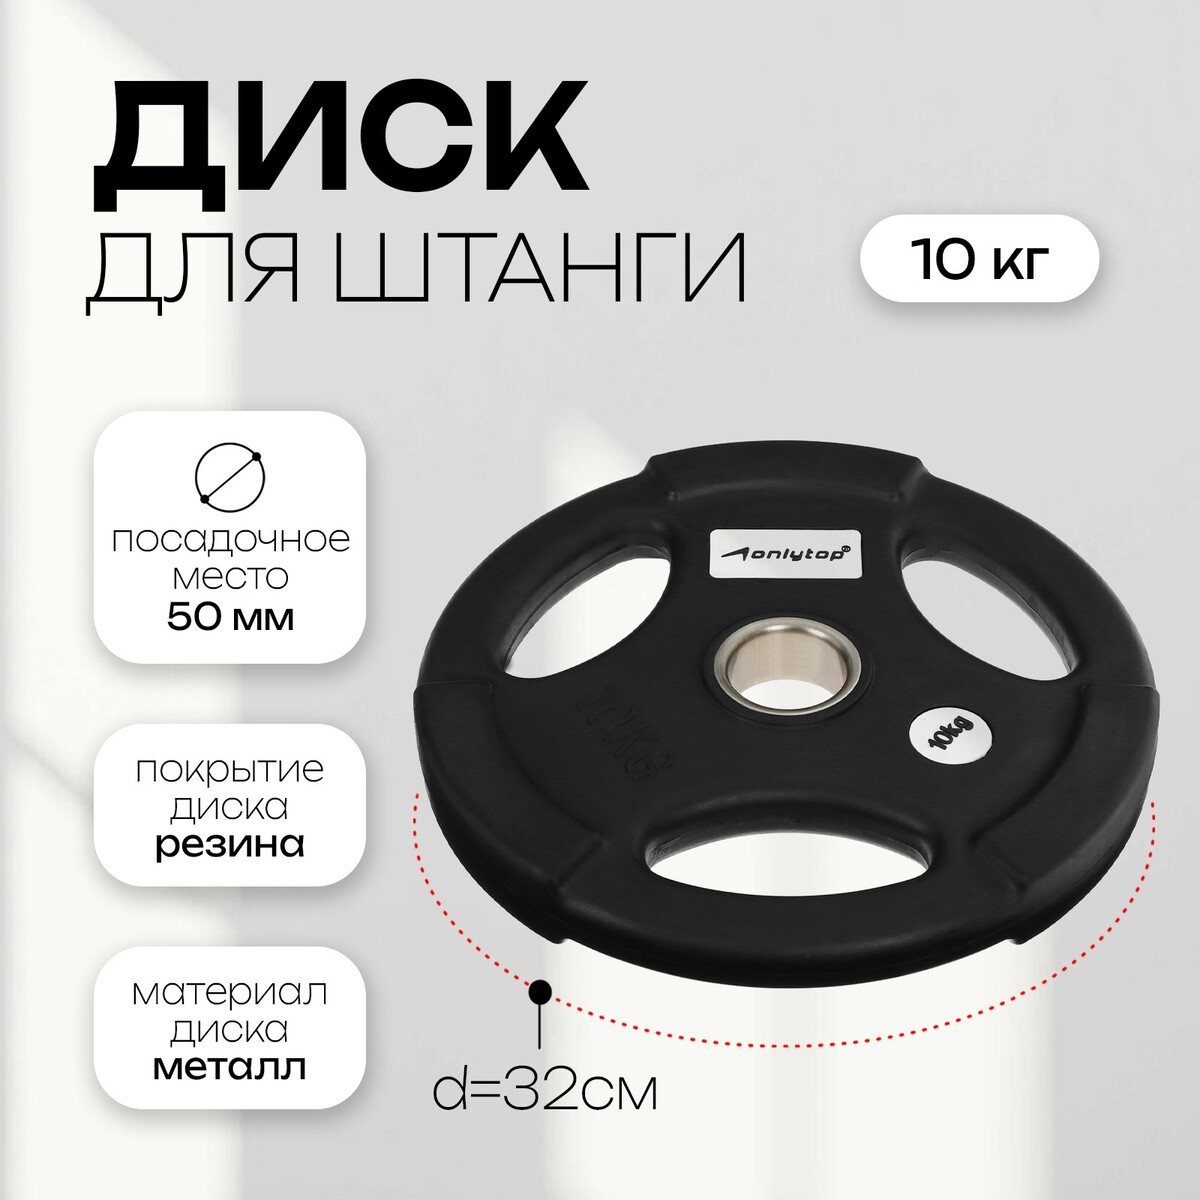 Диск олимпийский onlytop, обрезиненный, с тройным хватом, 10 кг, d=50 мм диск обрезиненный d26мм mb